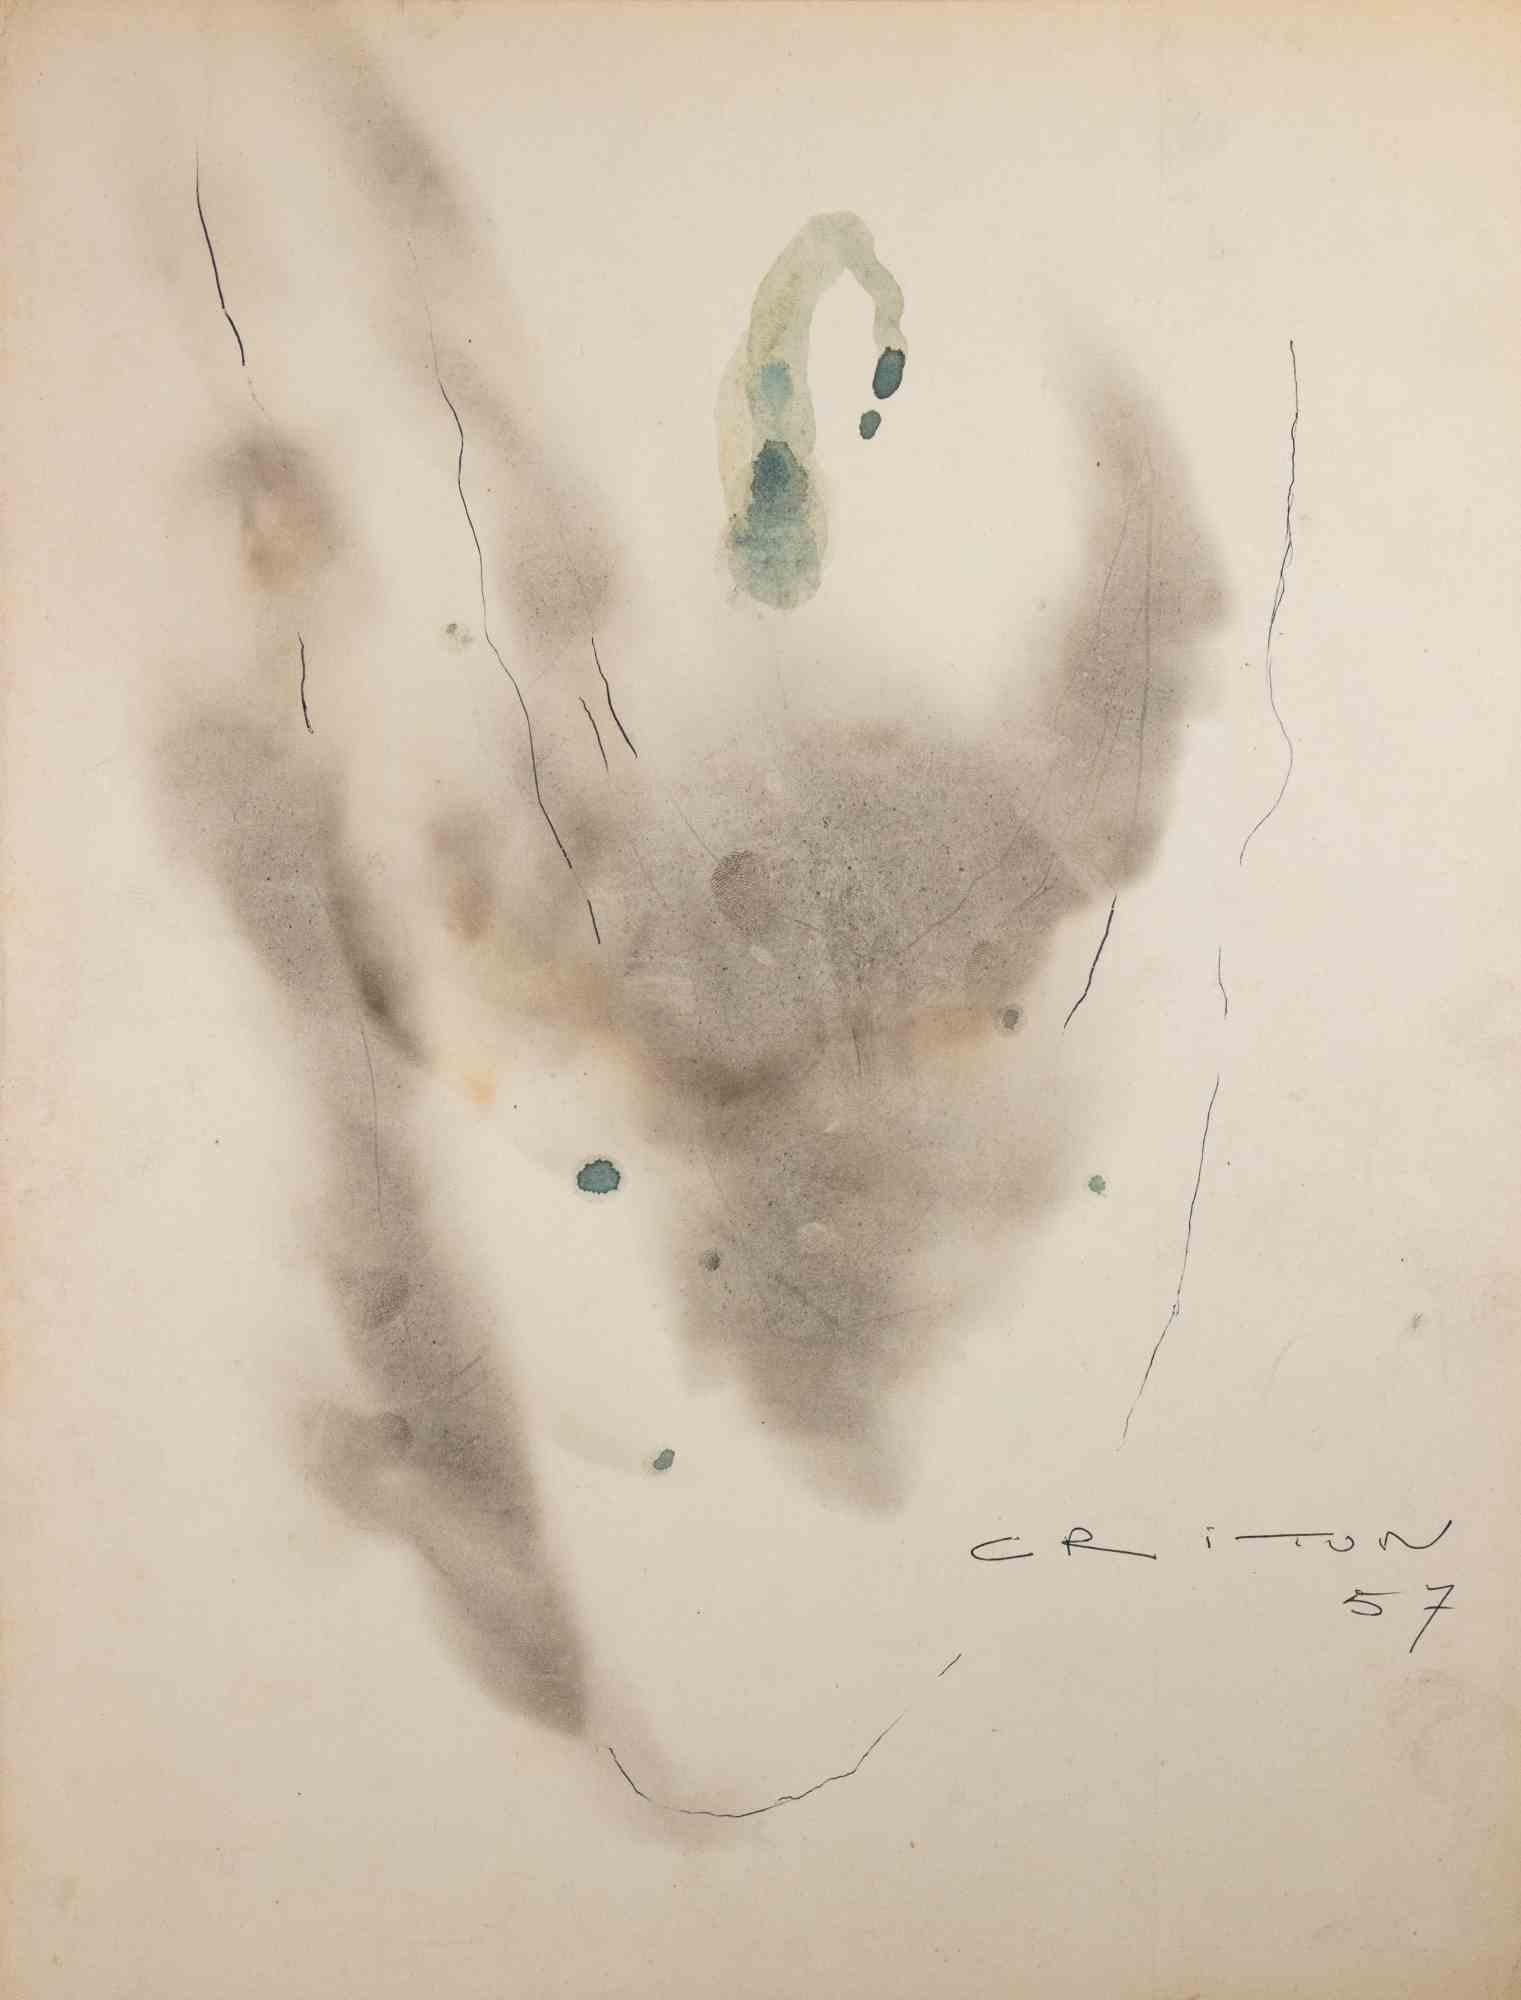 Abstrakte Komposition ist eine Zeichnung von Jean Criton aus dem Jahr 1957.

Aquarell, Tinte auf Papier. 

Handsigniert und datiert.

Gute Bedingungen.

Das Kunstwerk ist poetisch durch schöne Striche umgesetzt